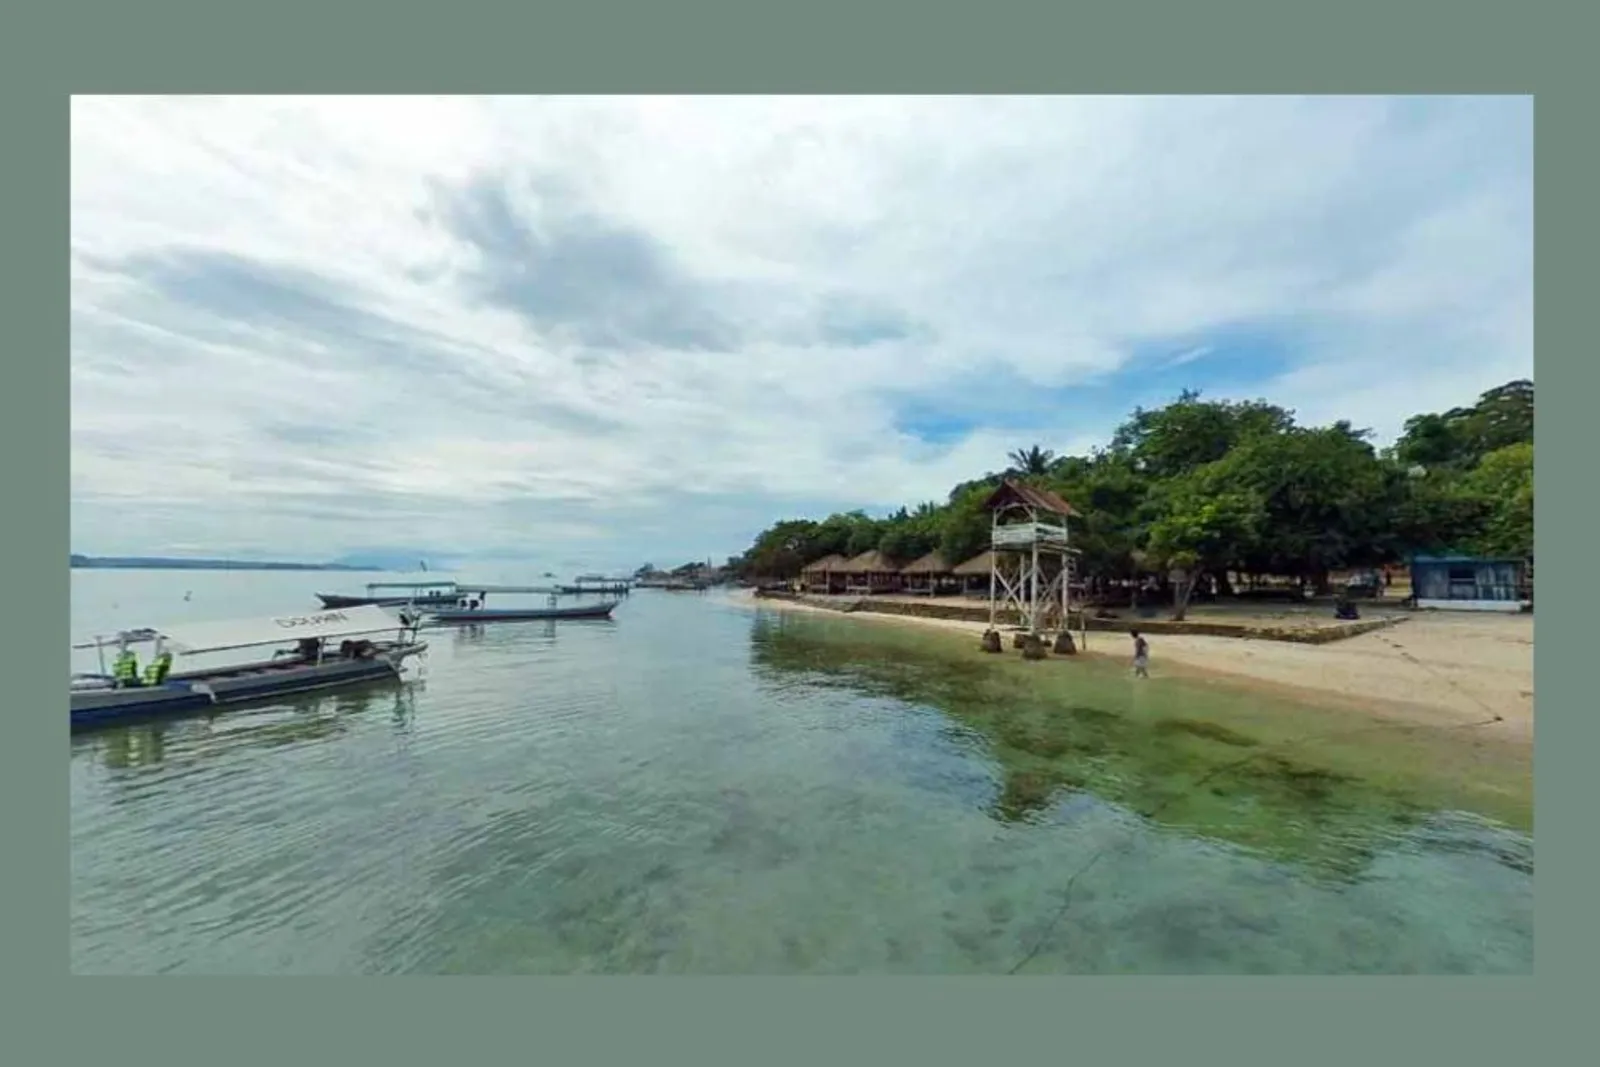 10 Rekomendasi Wisata Bandar Lampung Beserta HTM, Mulai dari Rp5 Ribu